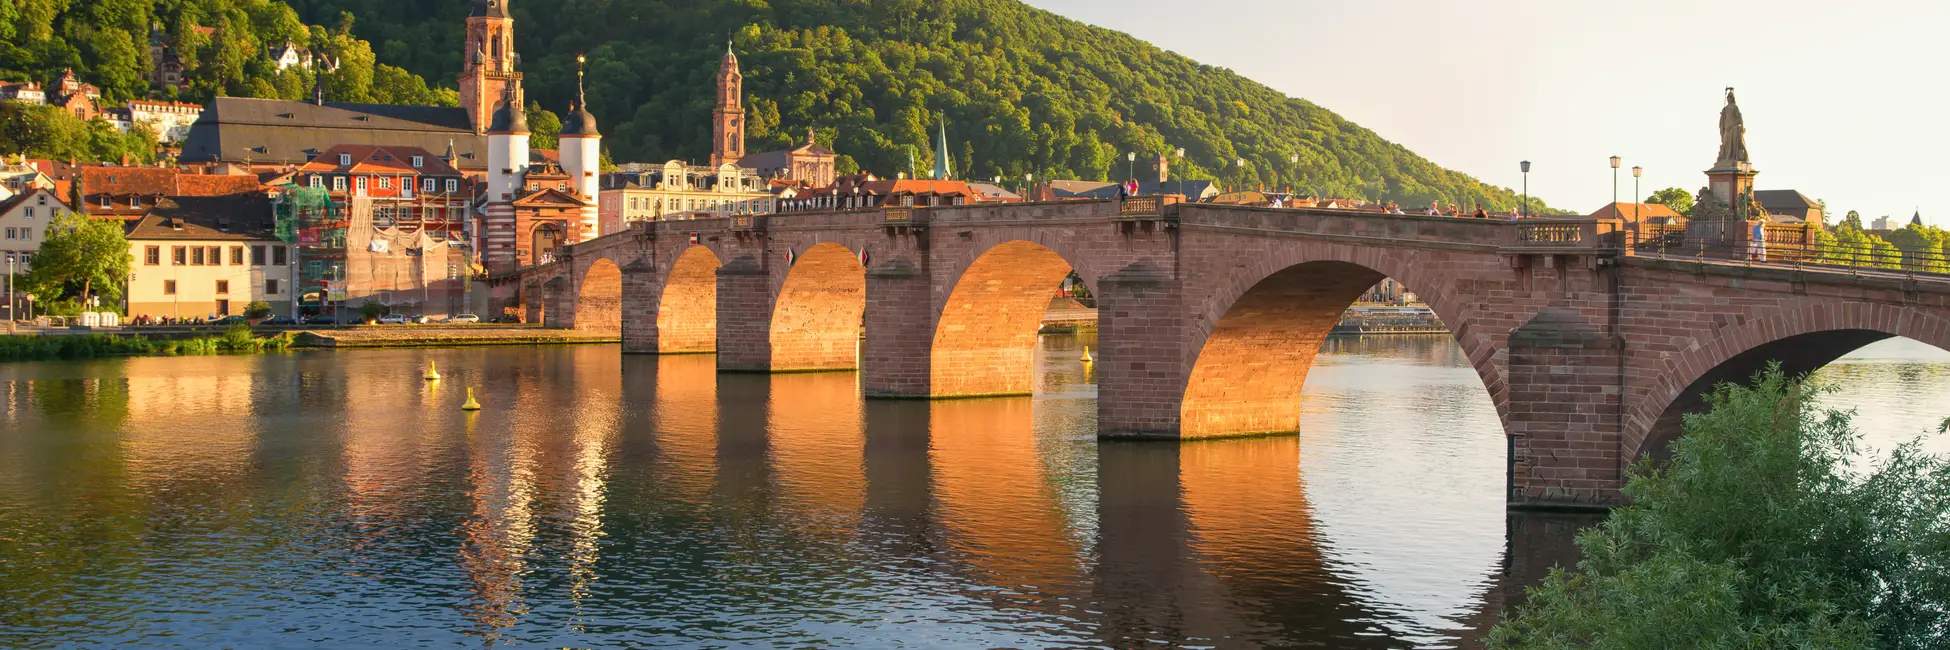 Le pont d'Heidelberg 